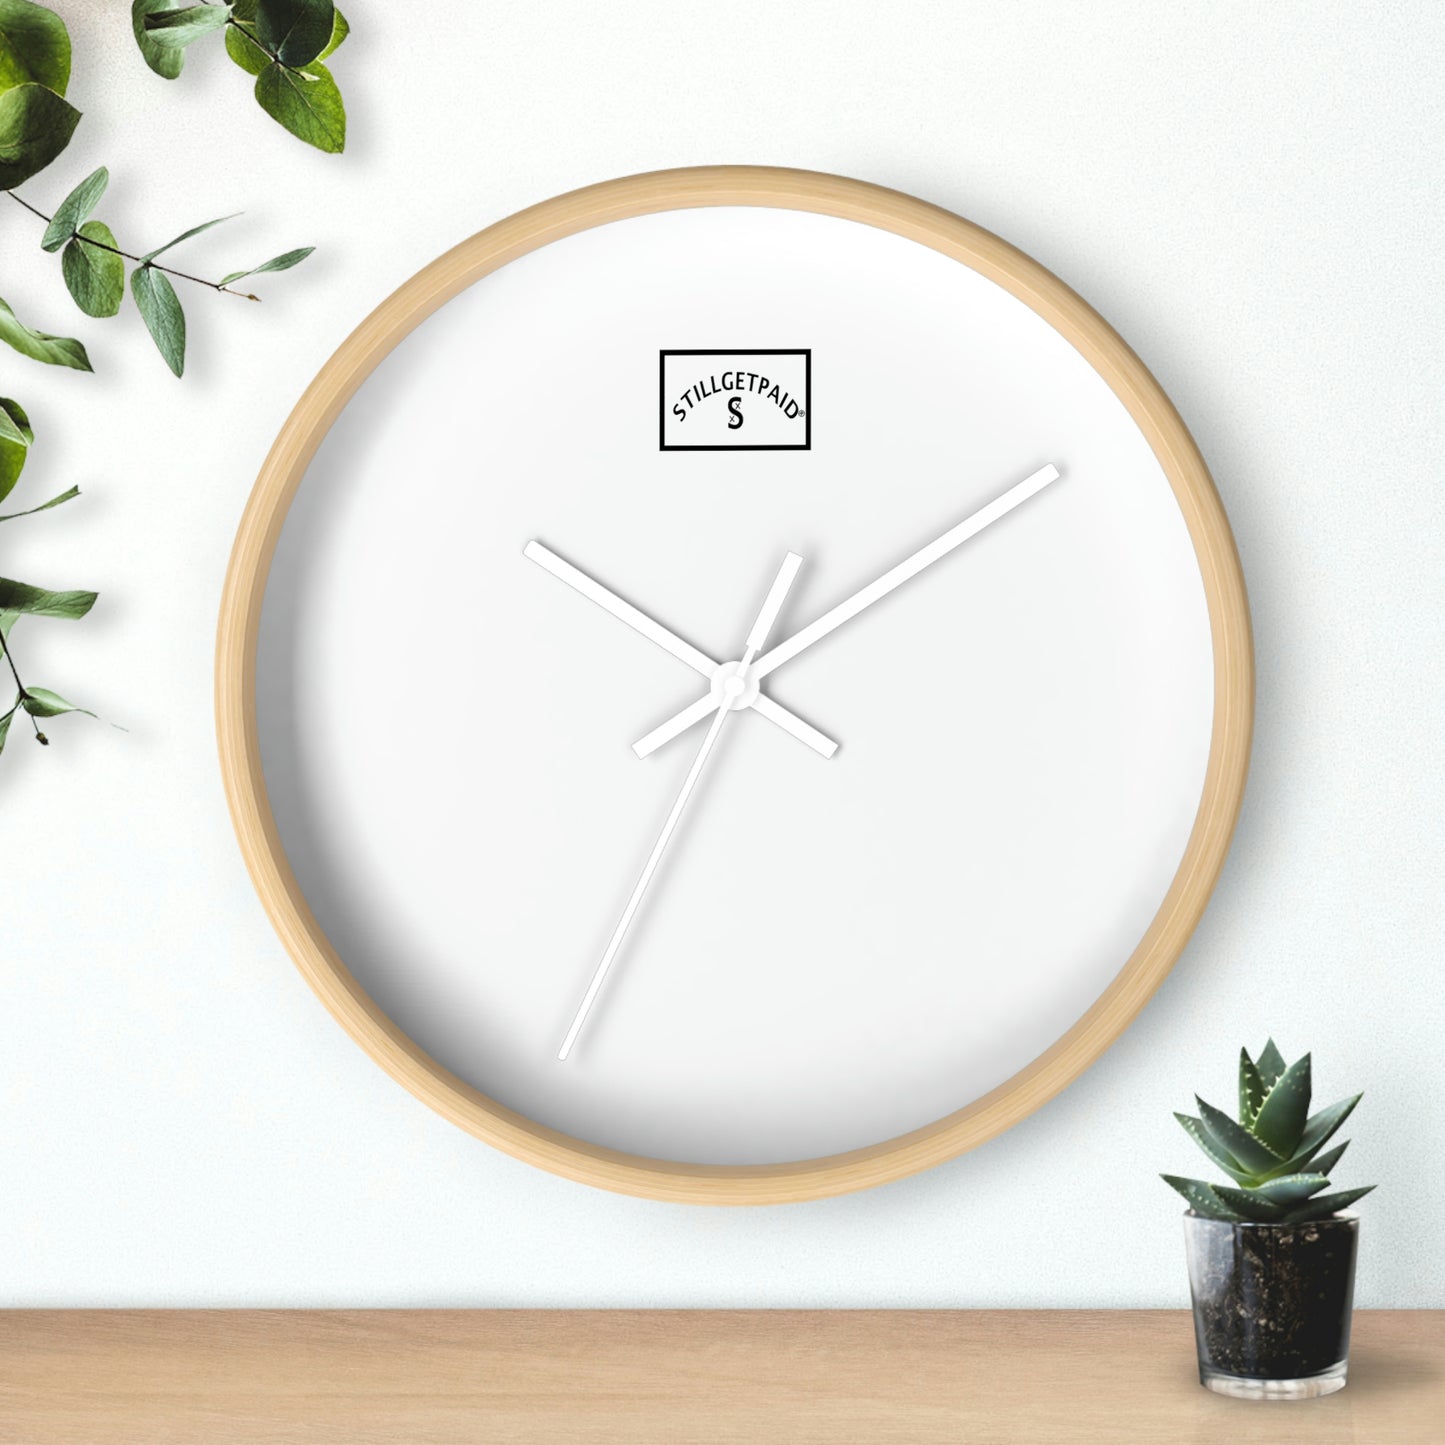 STILLGETPAID®️ APPAREL Wall clock